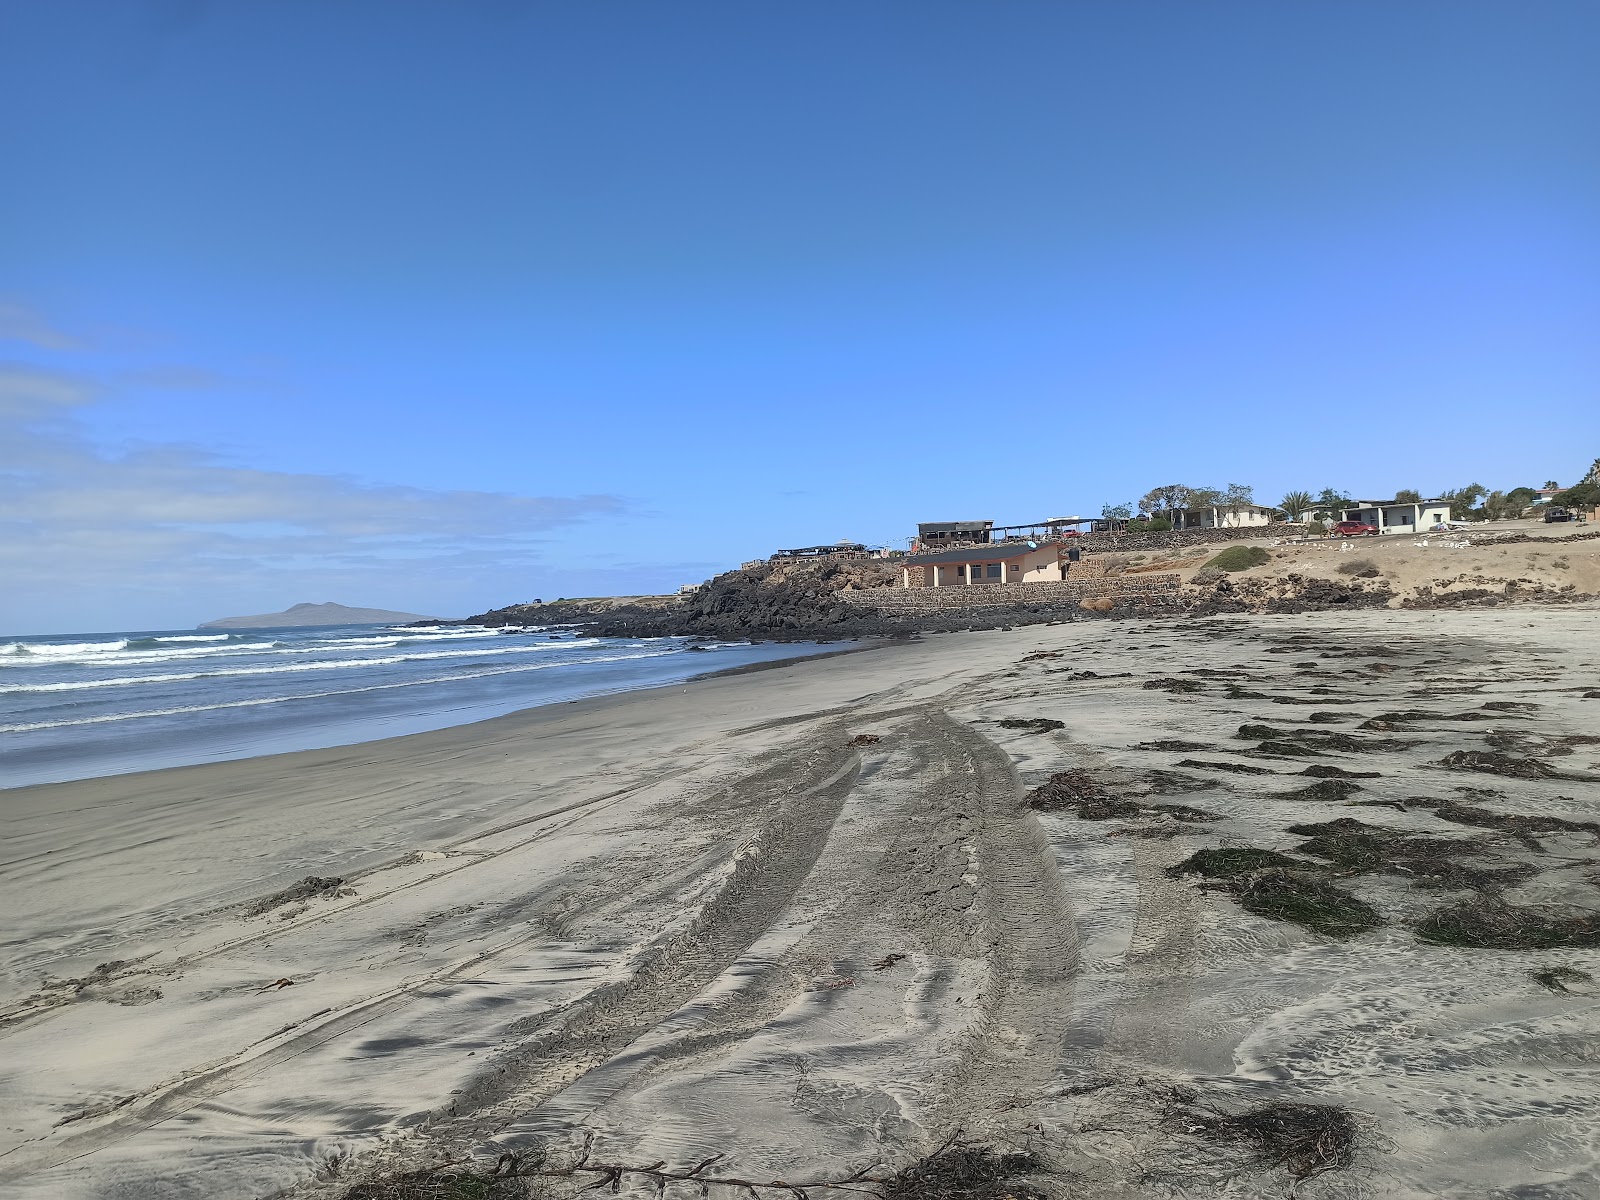 Fotografie cu Playa La Chorera cu o suprafață de nisip maro